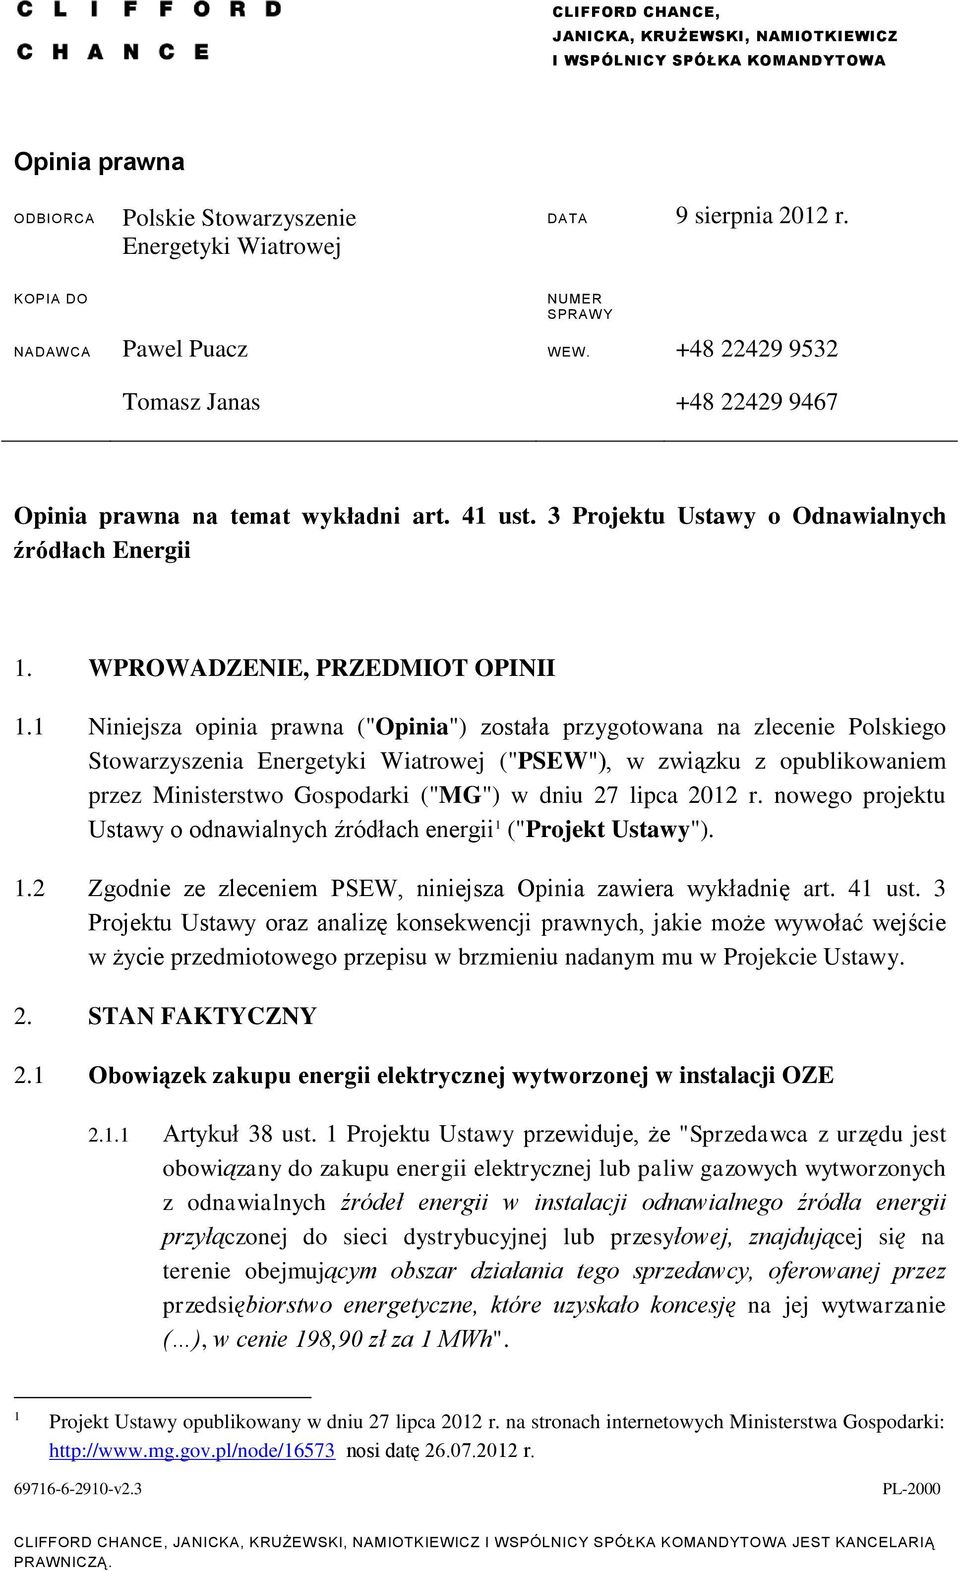 1 Niniejsza opinia prawna ("Opinia") została przygotowana na zlecenie Polskiego Stowarzyszenia Energetyki Wiatrowej ("PSEW"), w związku z opublikowaniem przez Ministerstwo Gospodarki ("MG") w dniu 27